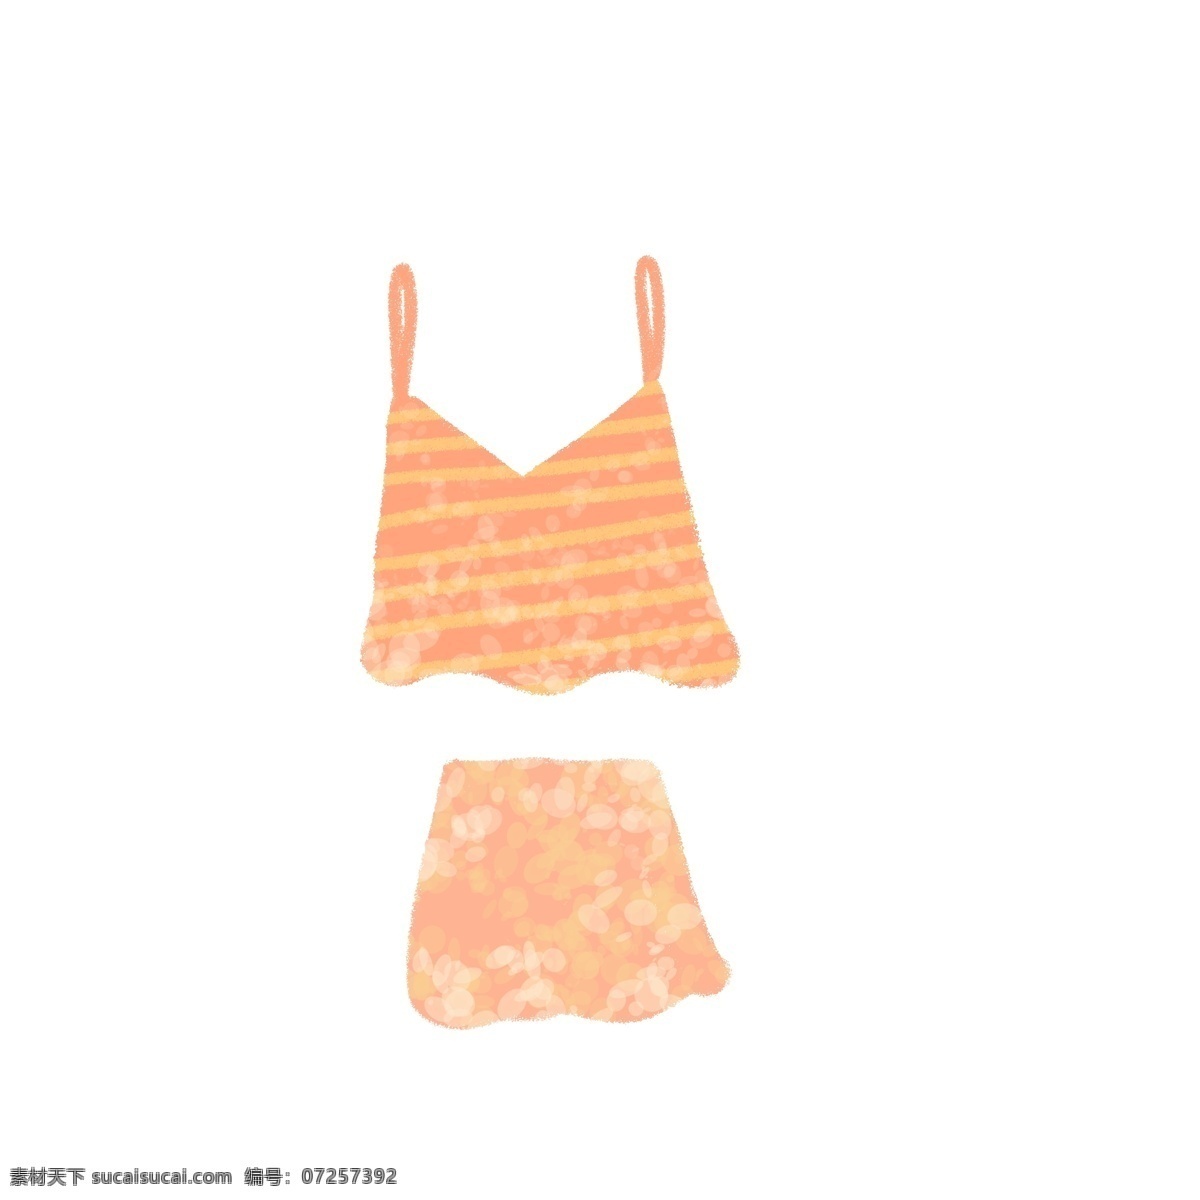 夏日 清爽 比基尼 橙色 清凉 夏天 海滩 衣服